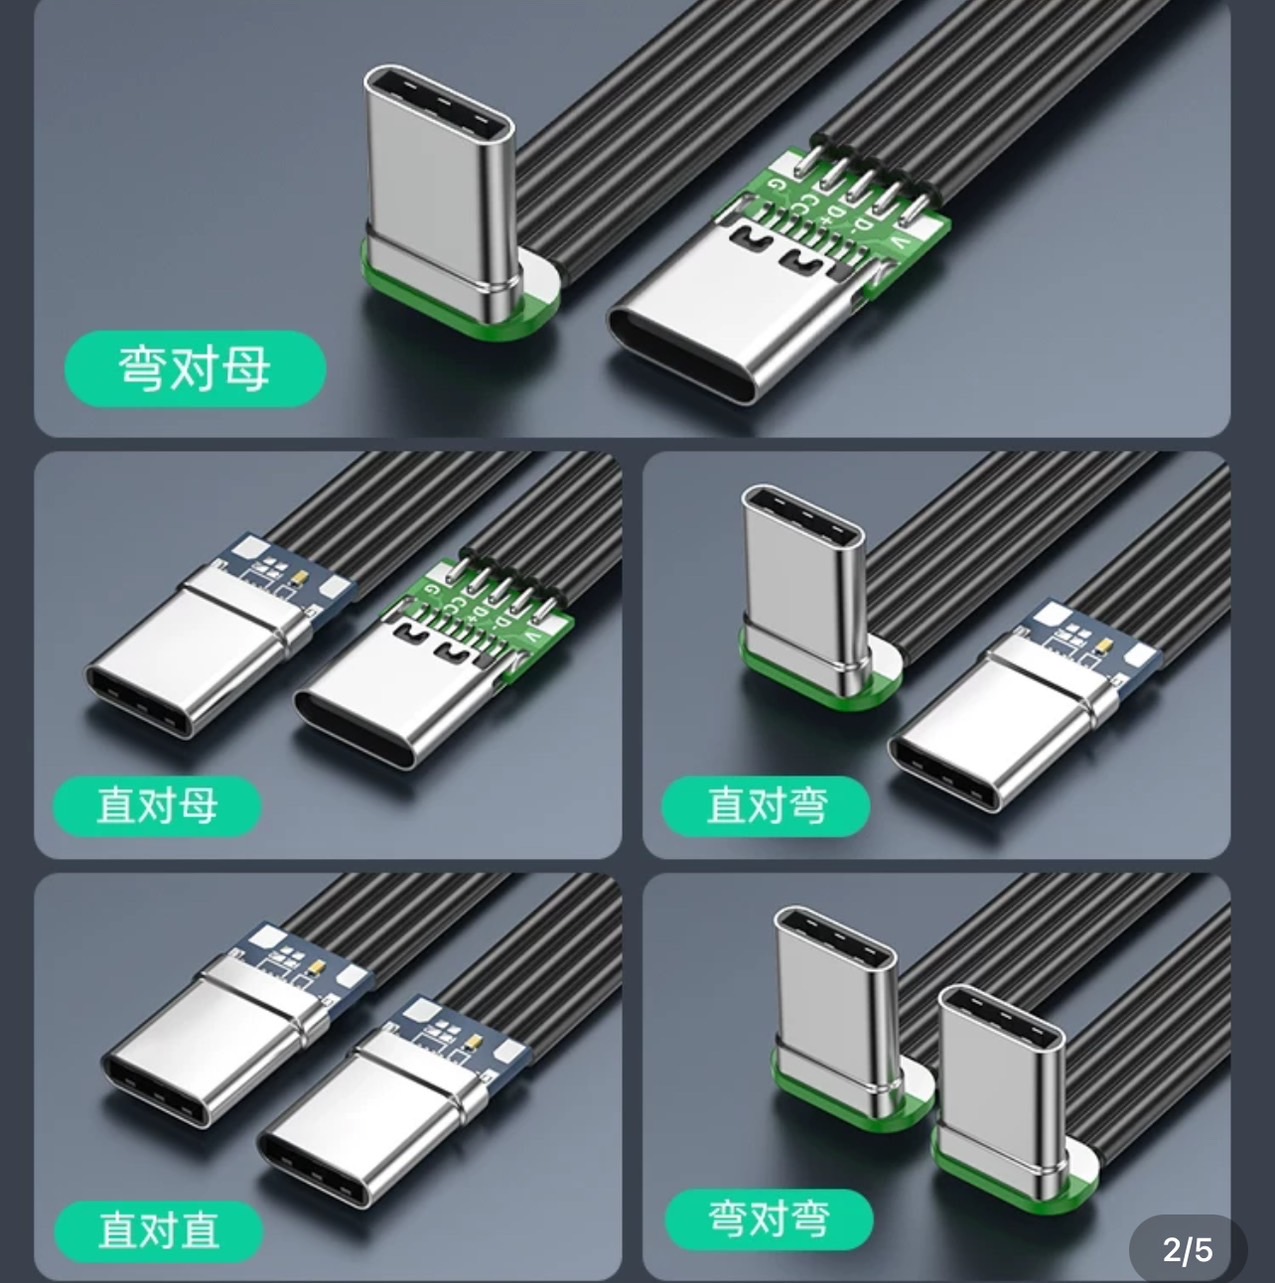 USB 3.0 有五種不同的彎頭設計，包括左彎、右彎、上彎、下彎和直頭，USB 3.0 以滿足各種走線需求。